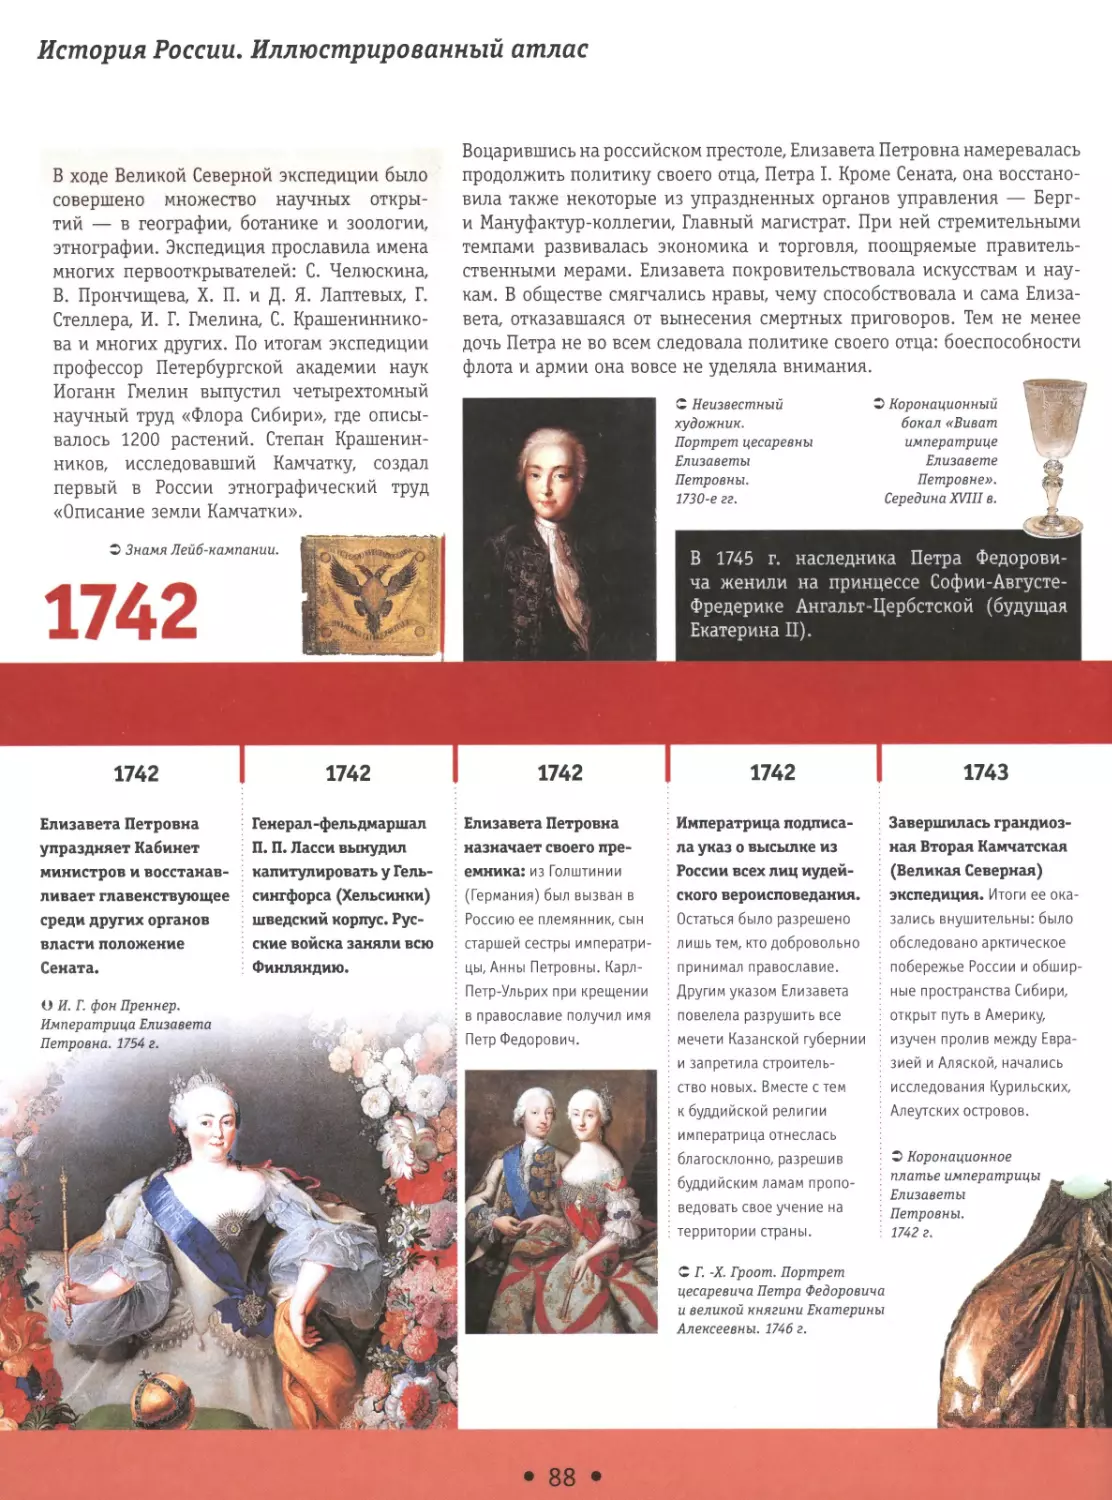 1741-1744